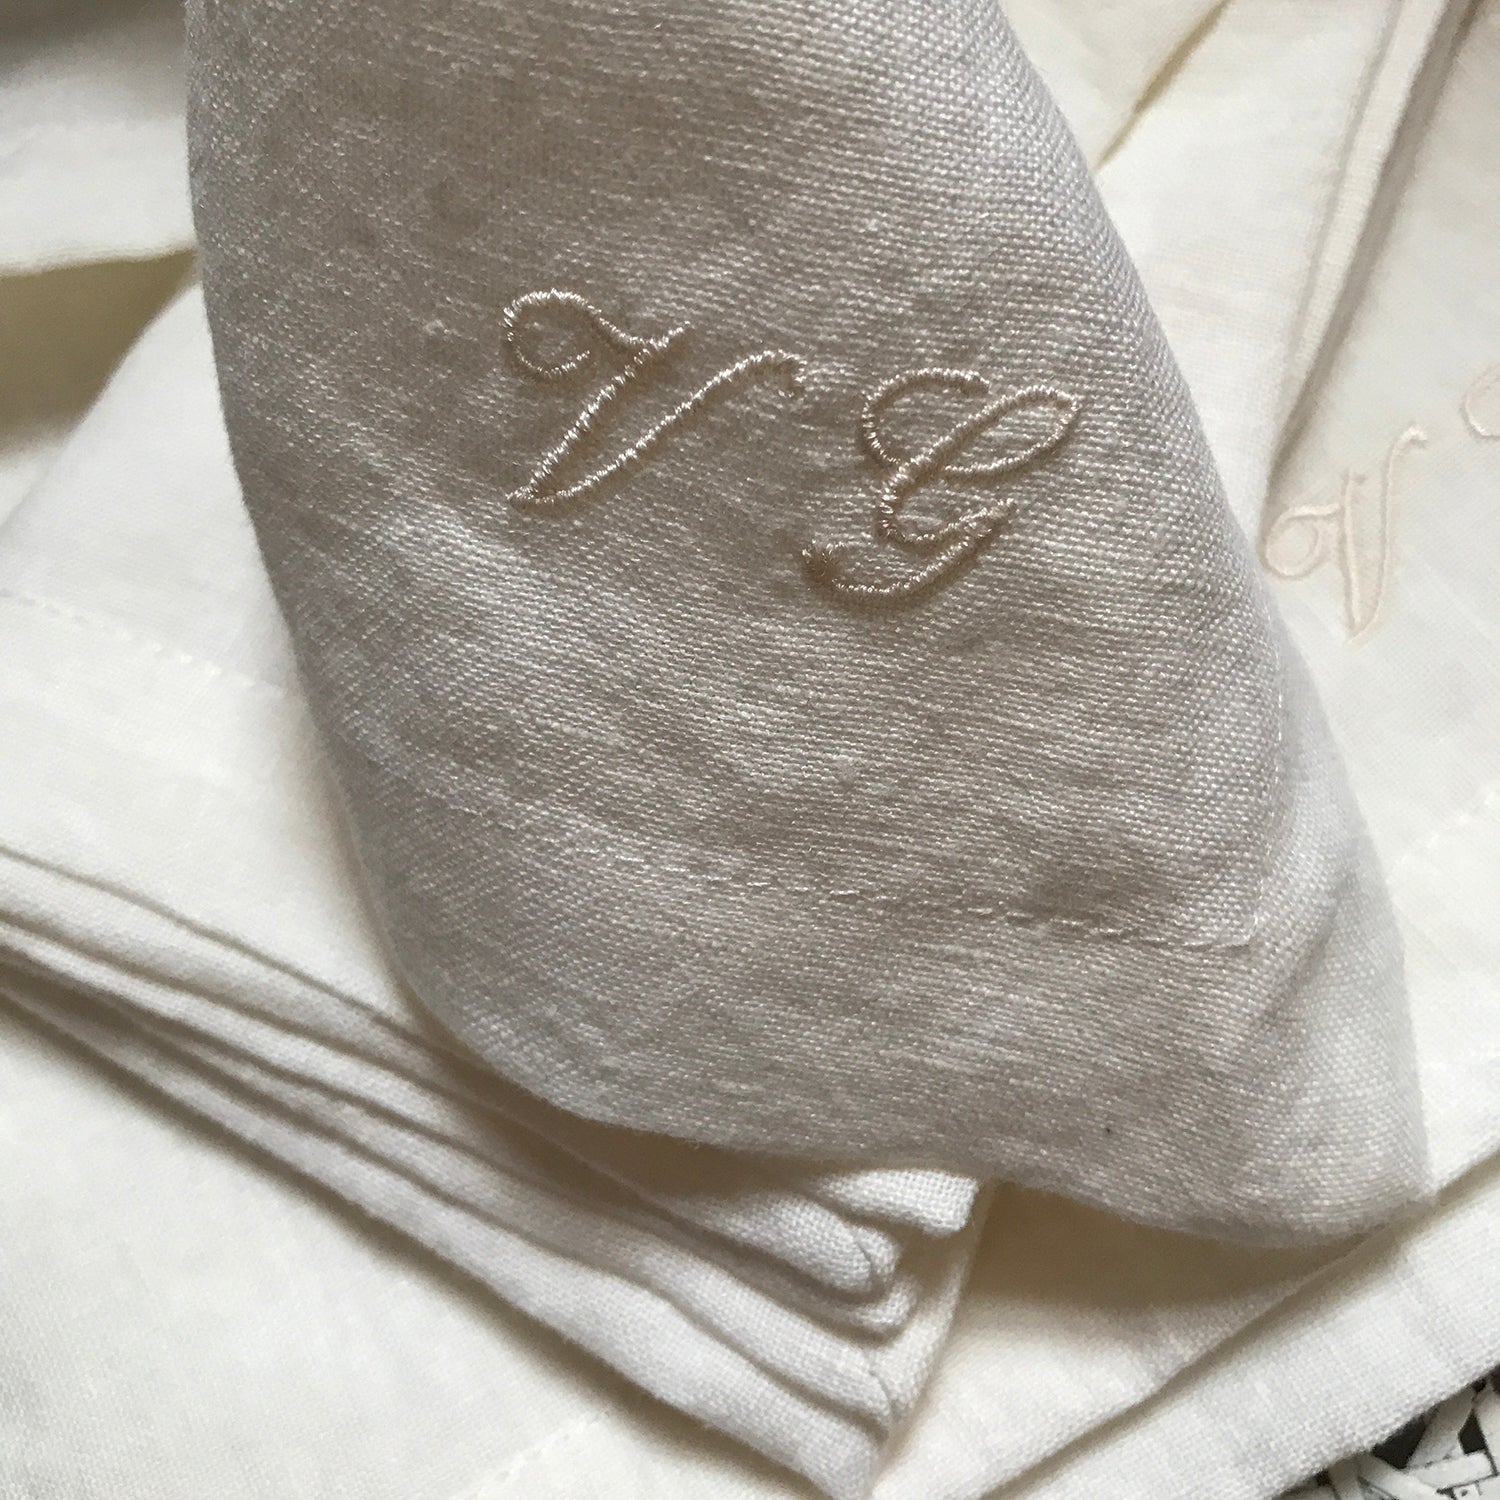 Detalle bordado en servilleta de lino blanco roto.